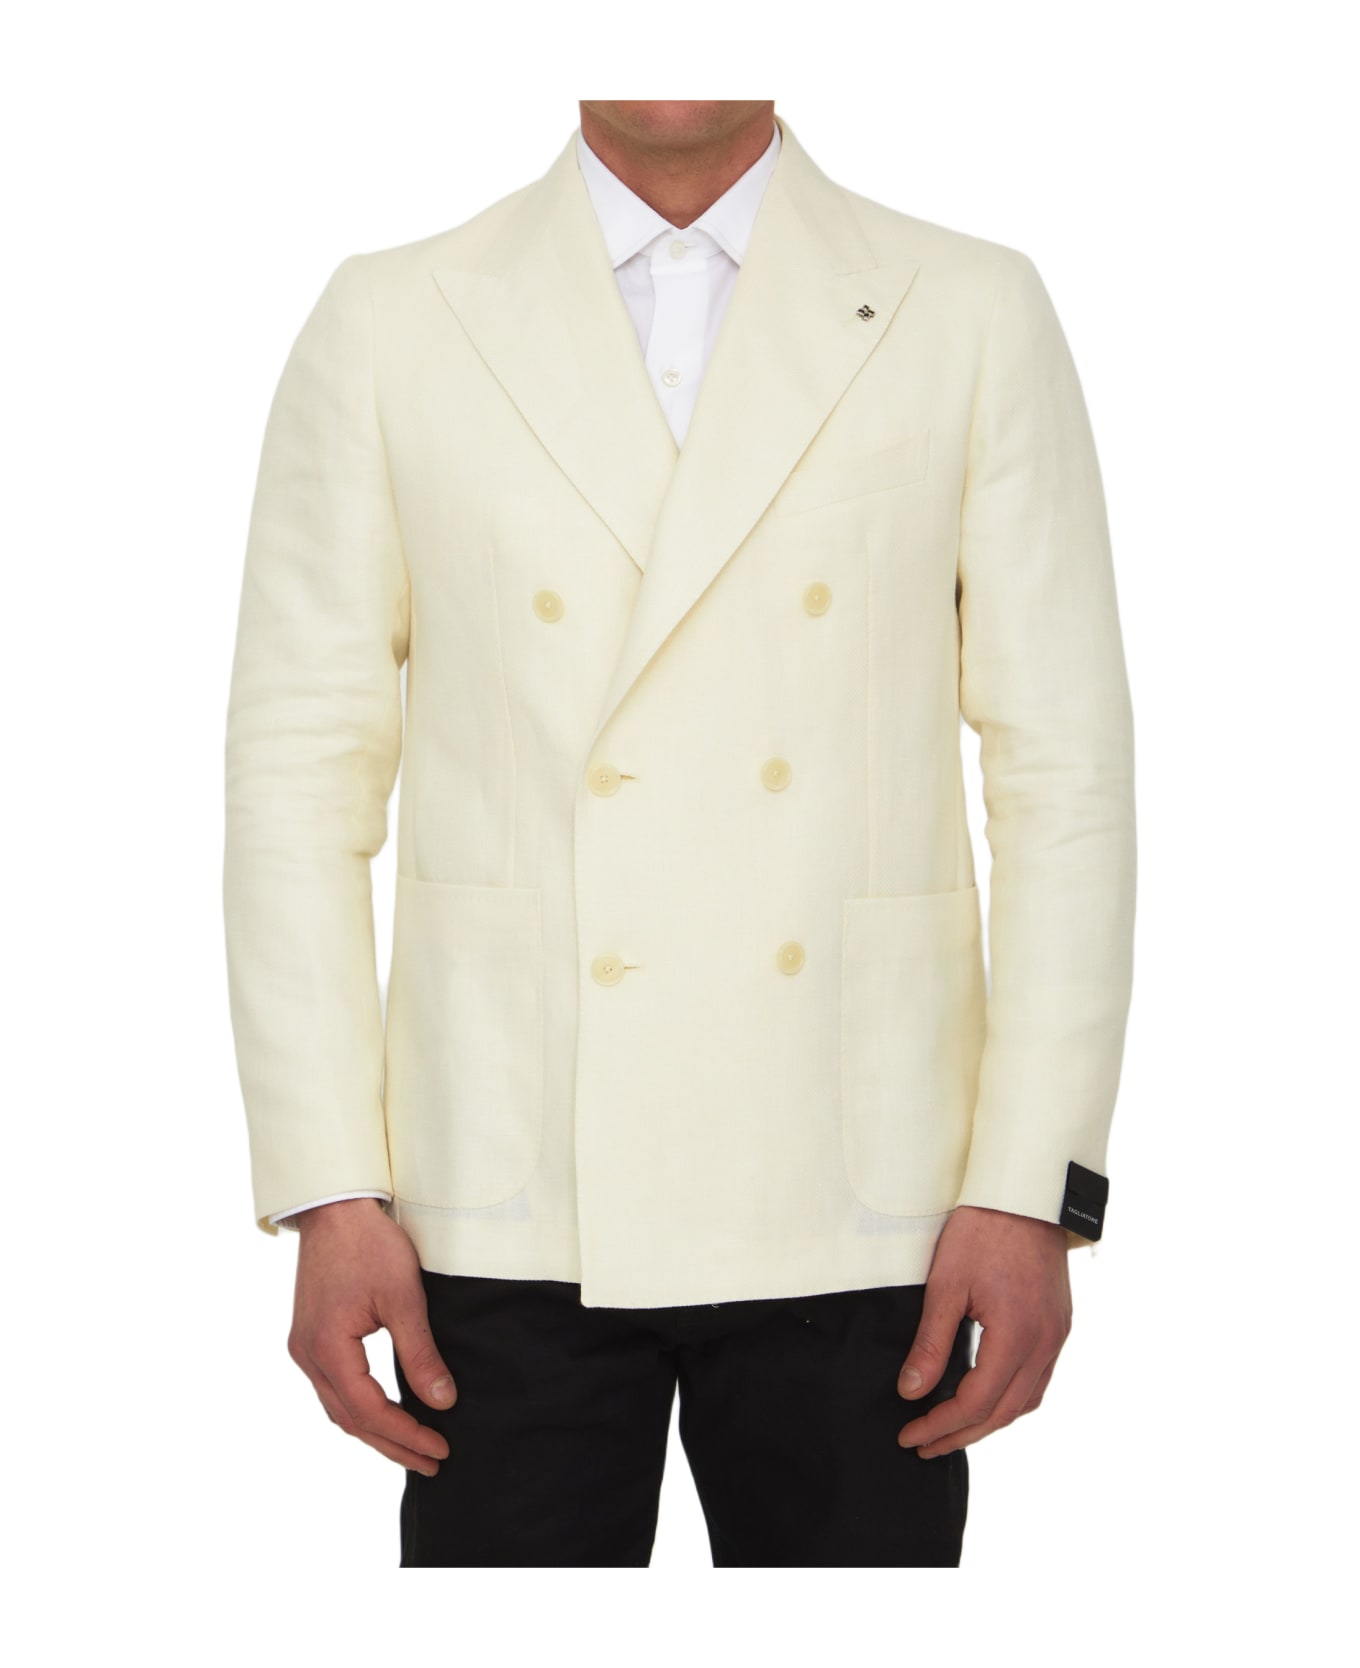 Tagliatore Cream-colored Double-breasted Jacket - CREAM